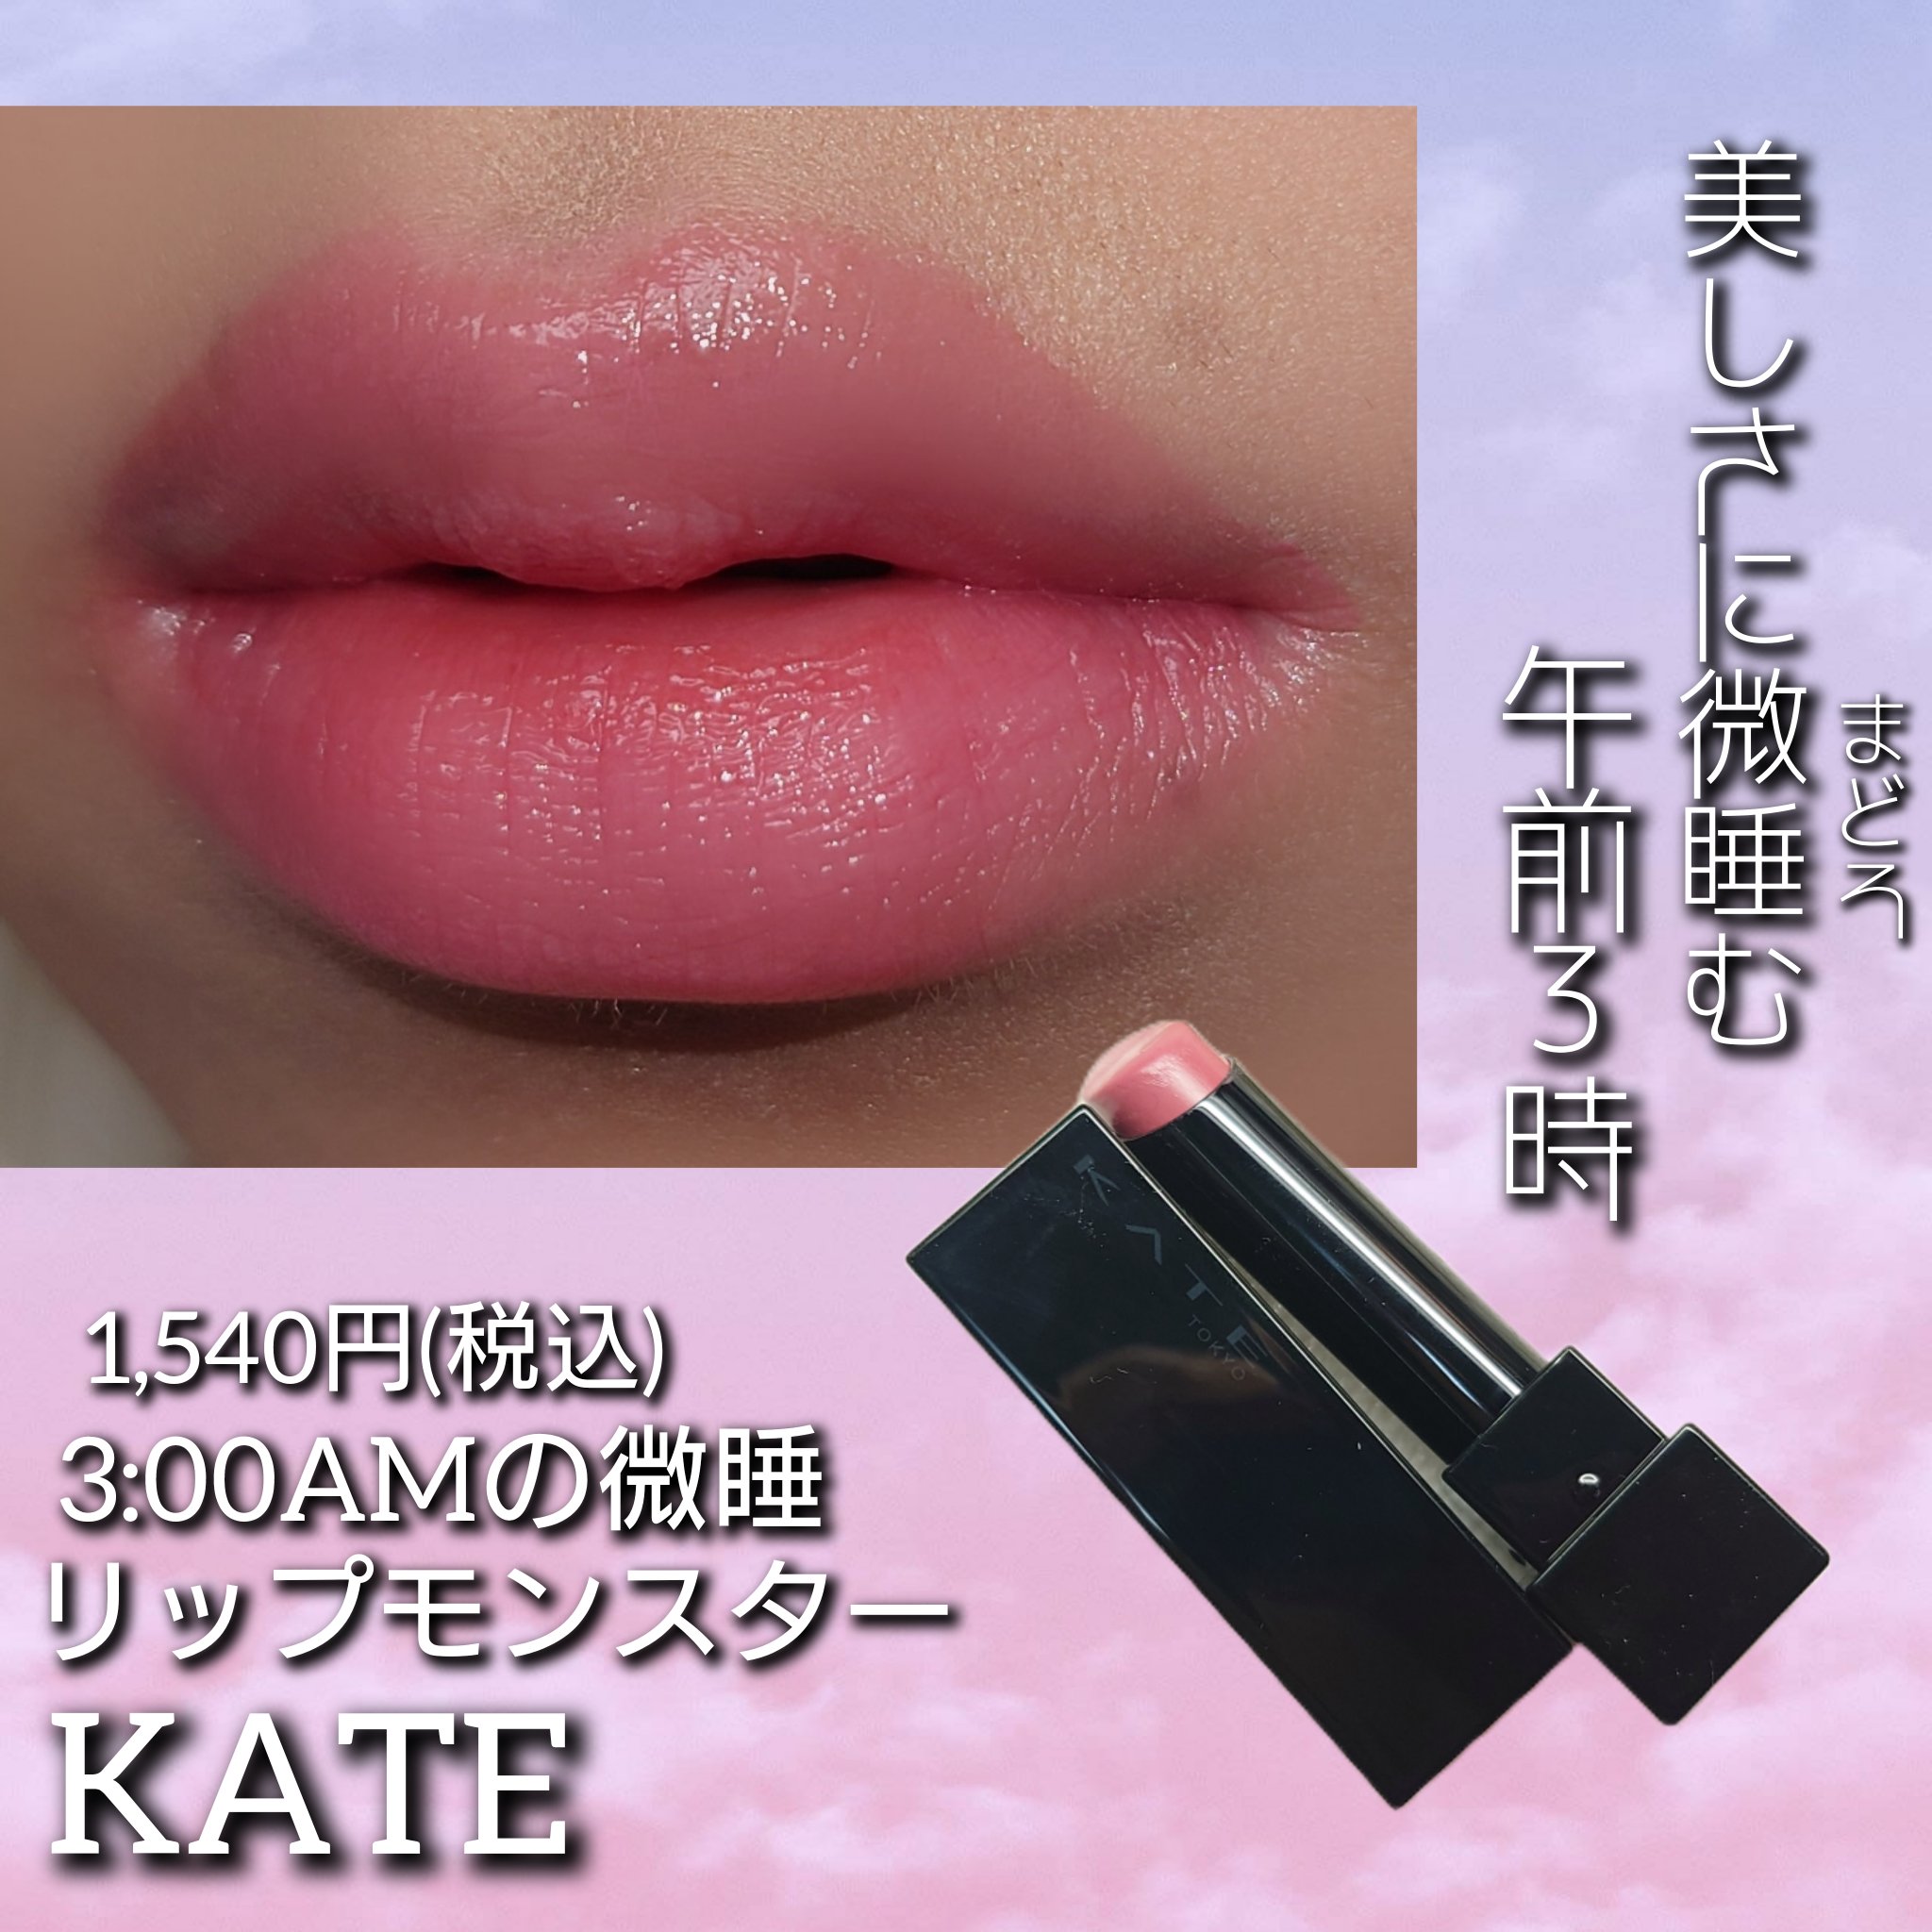 リップモンスター 13 3:00AMの微酔 / KATE(ケイト) | LIPS